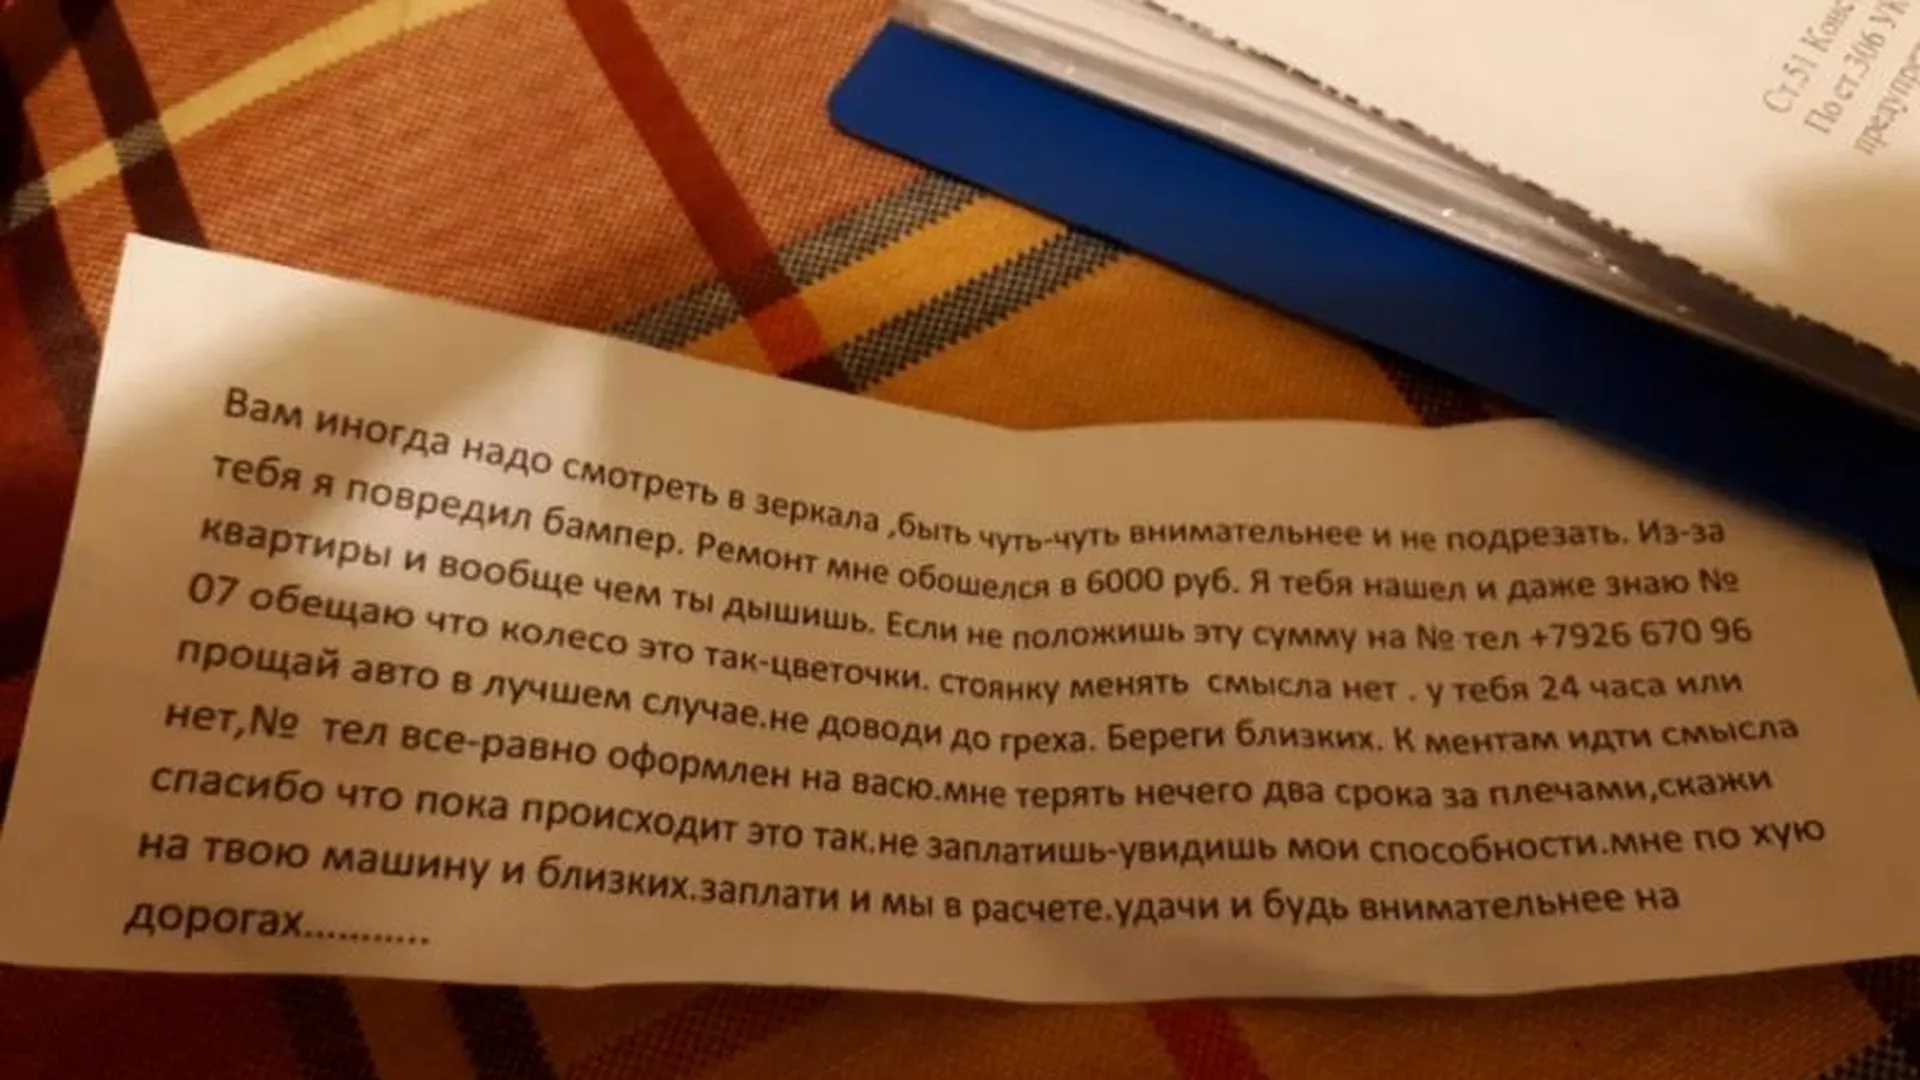 Записки с угрозами подкладывают автомобилистам в Одинцовском районе